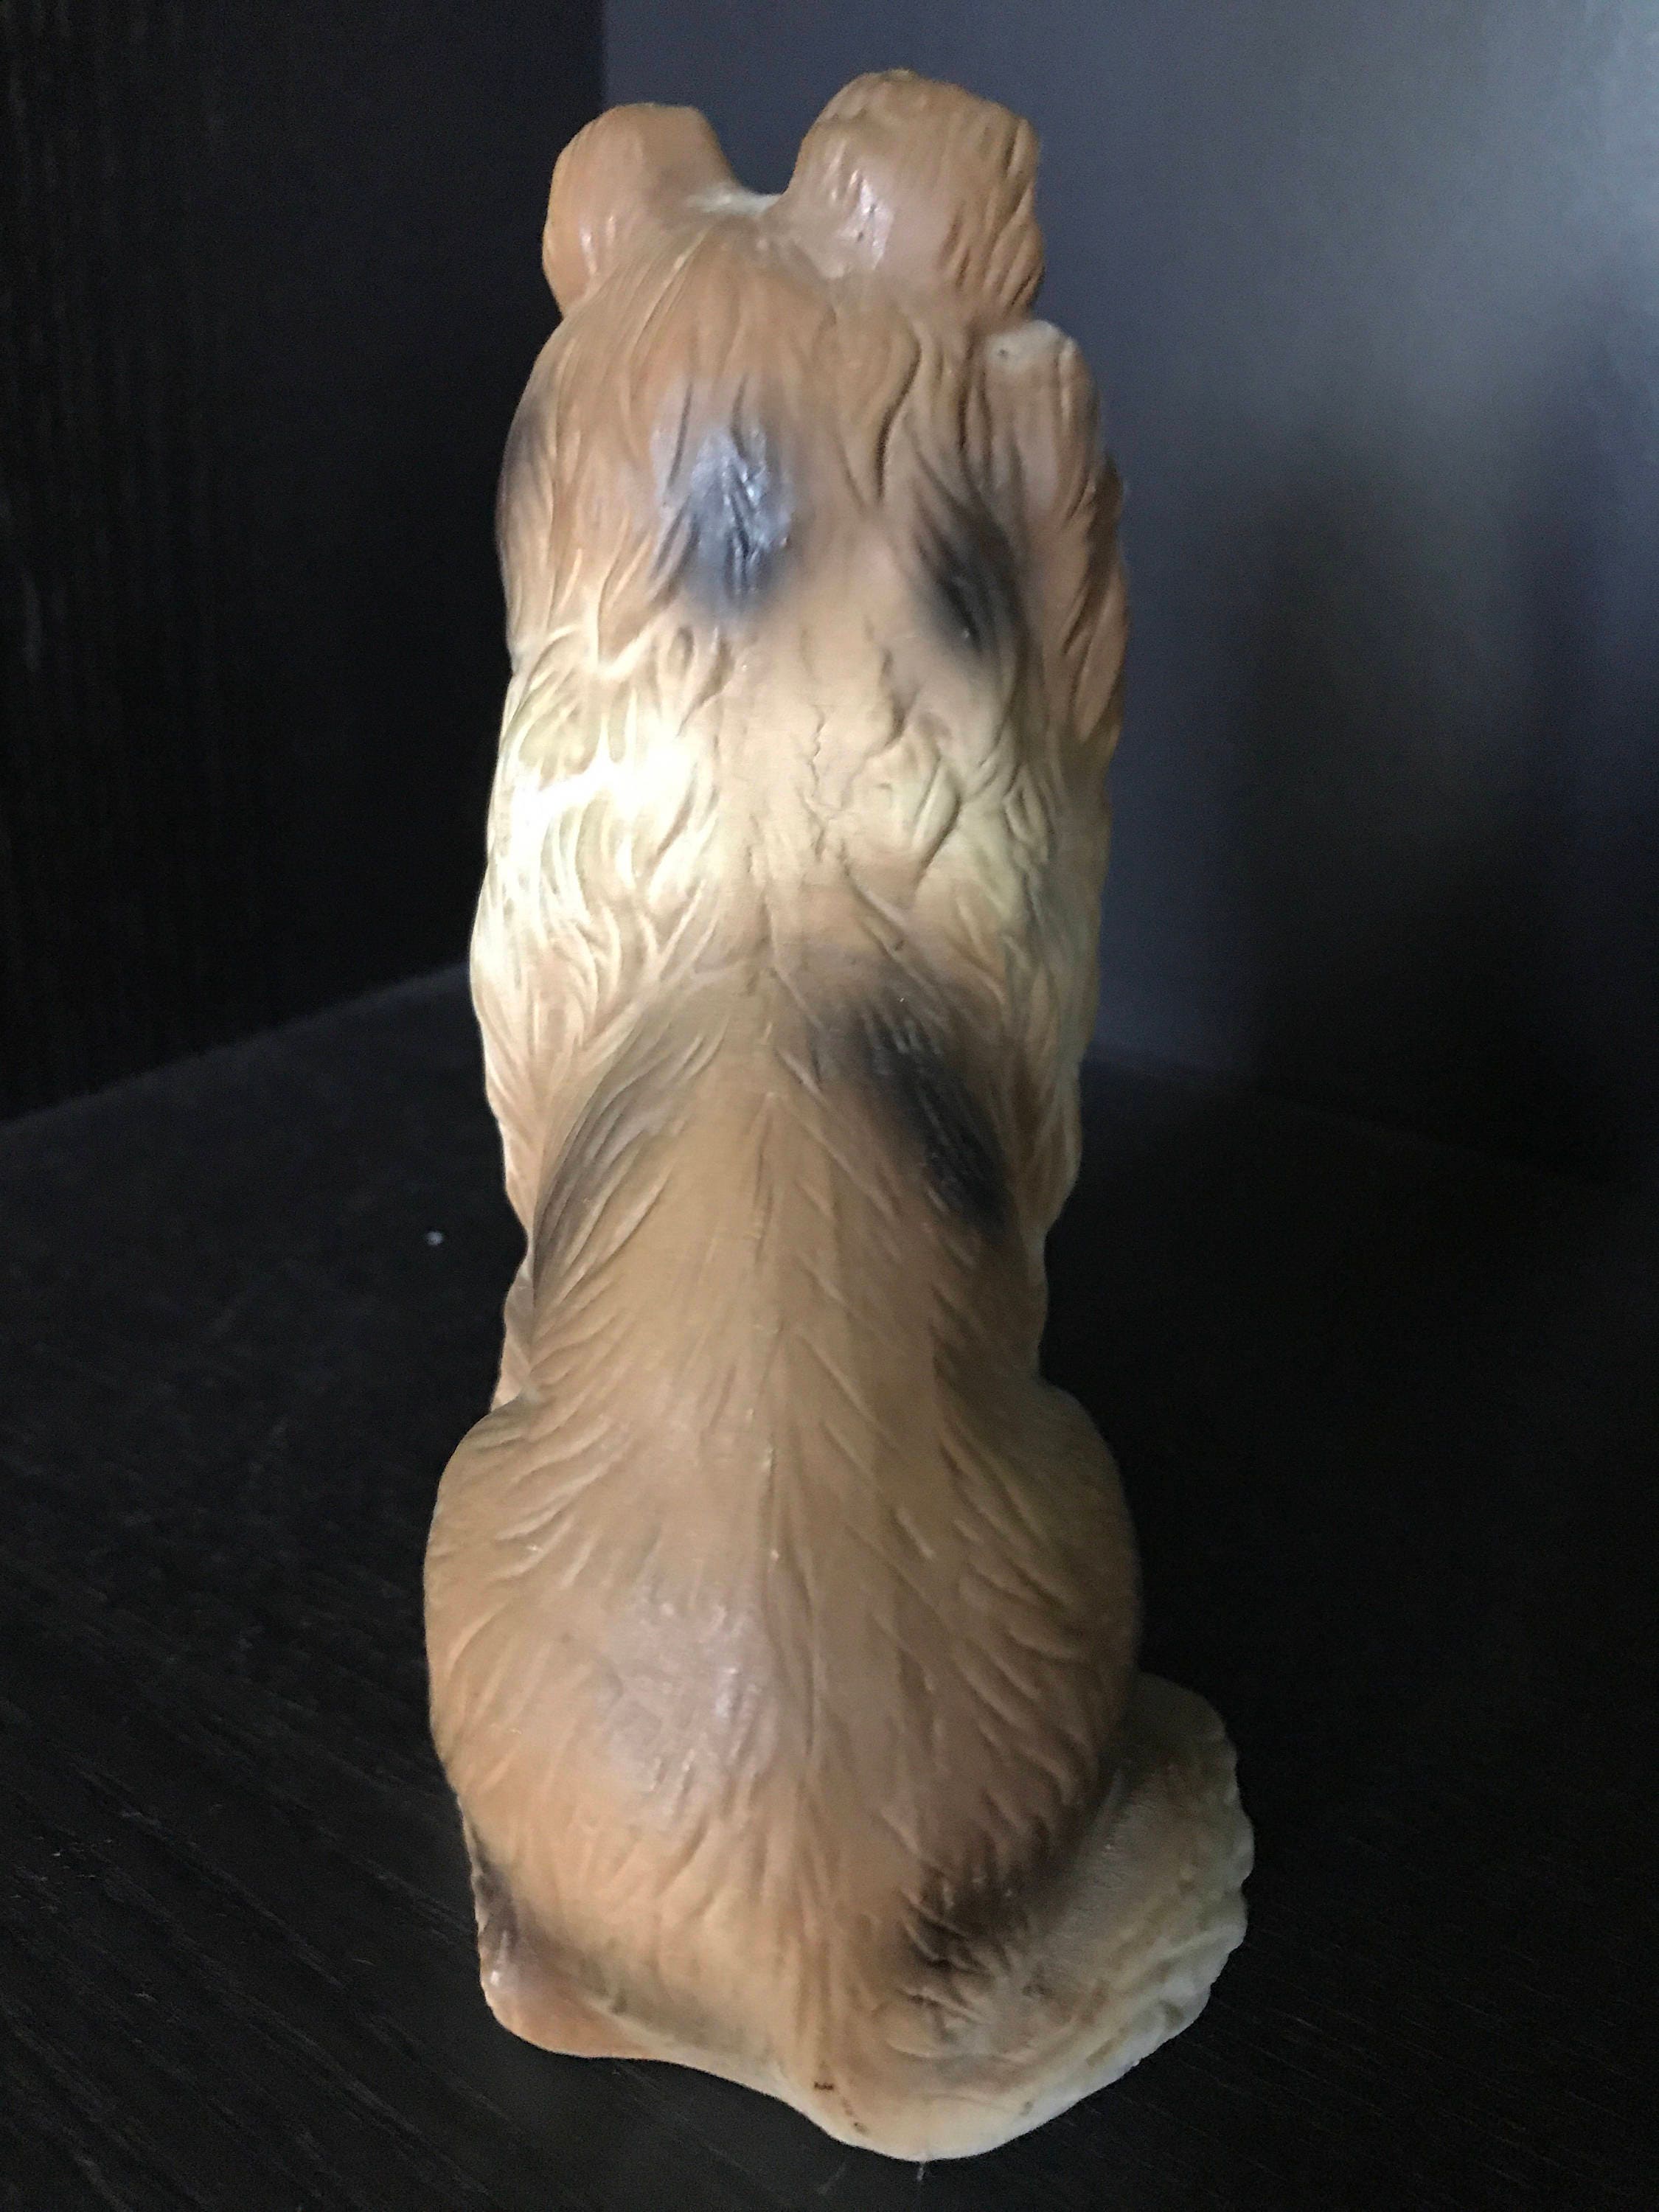 Vintage Collie Dog figurine bisque